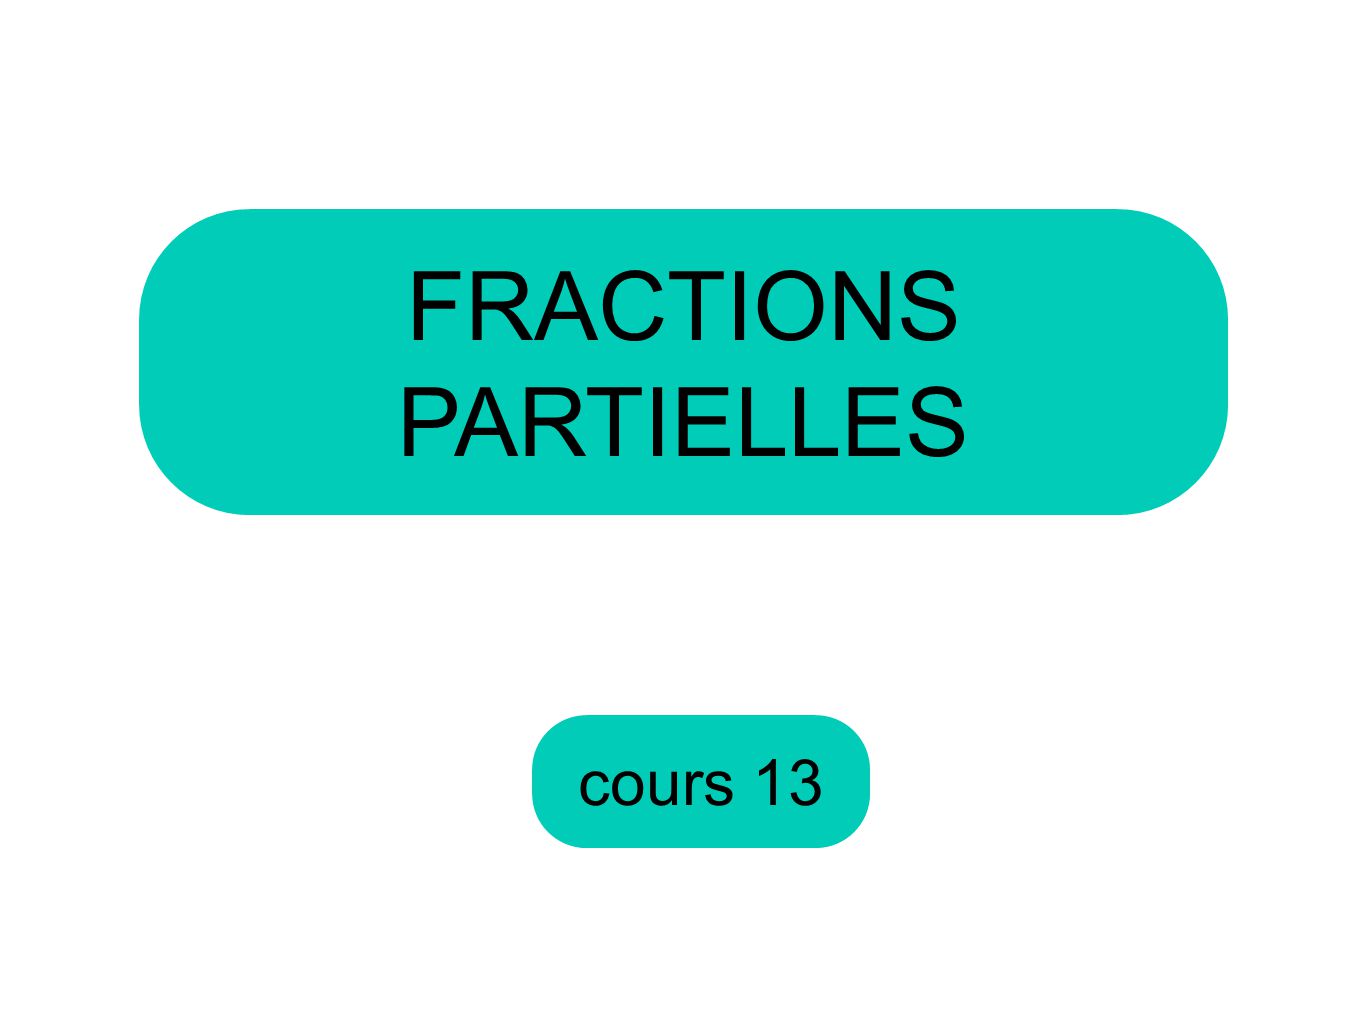 FRACTIONS PARTIELLES cours 13